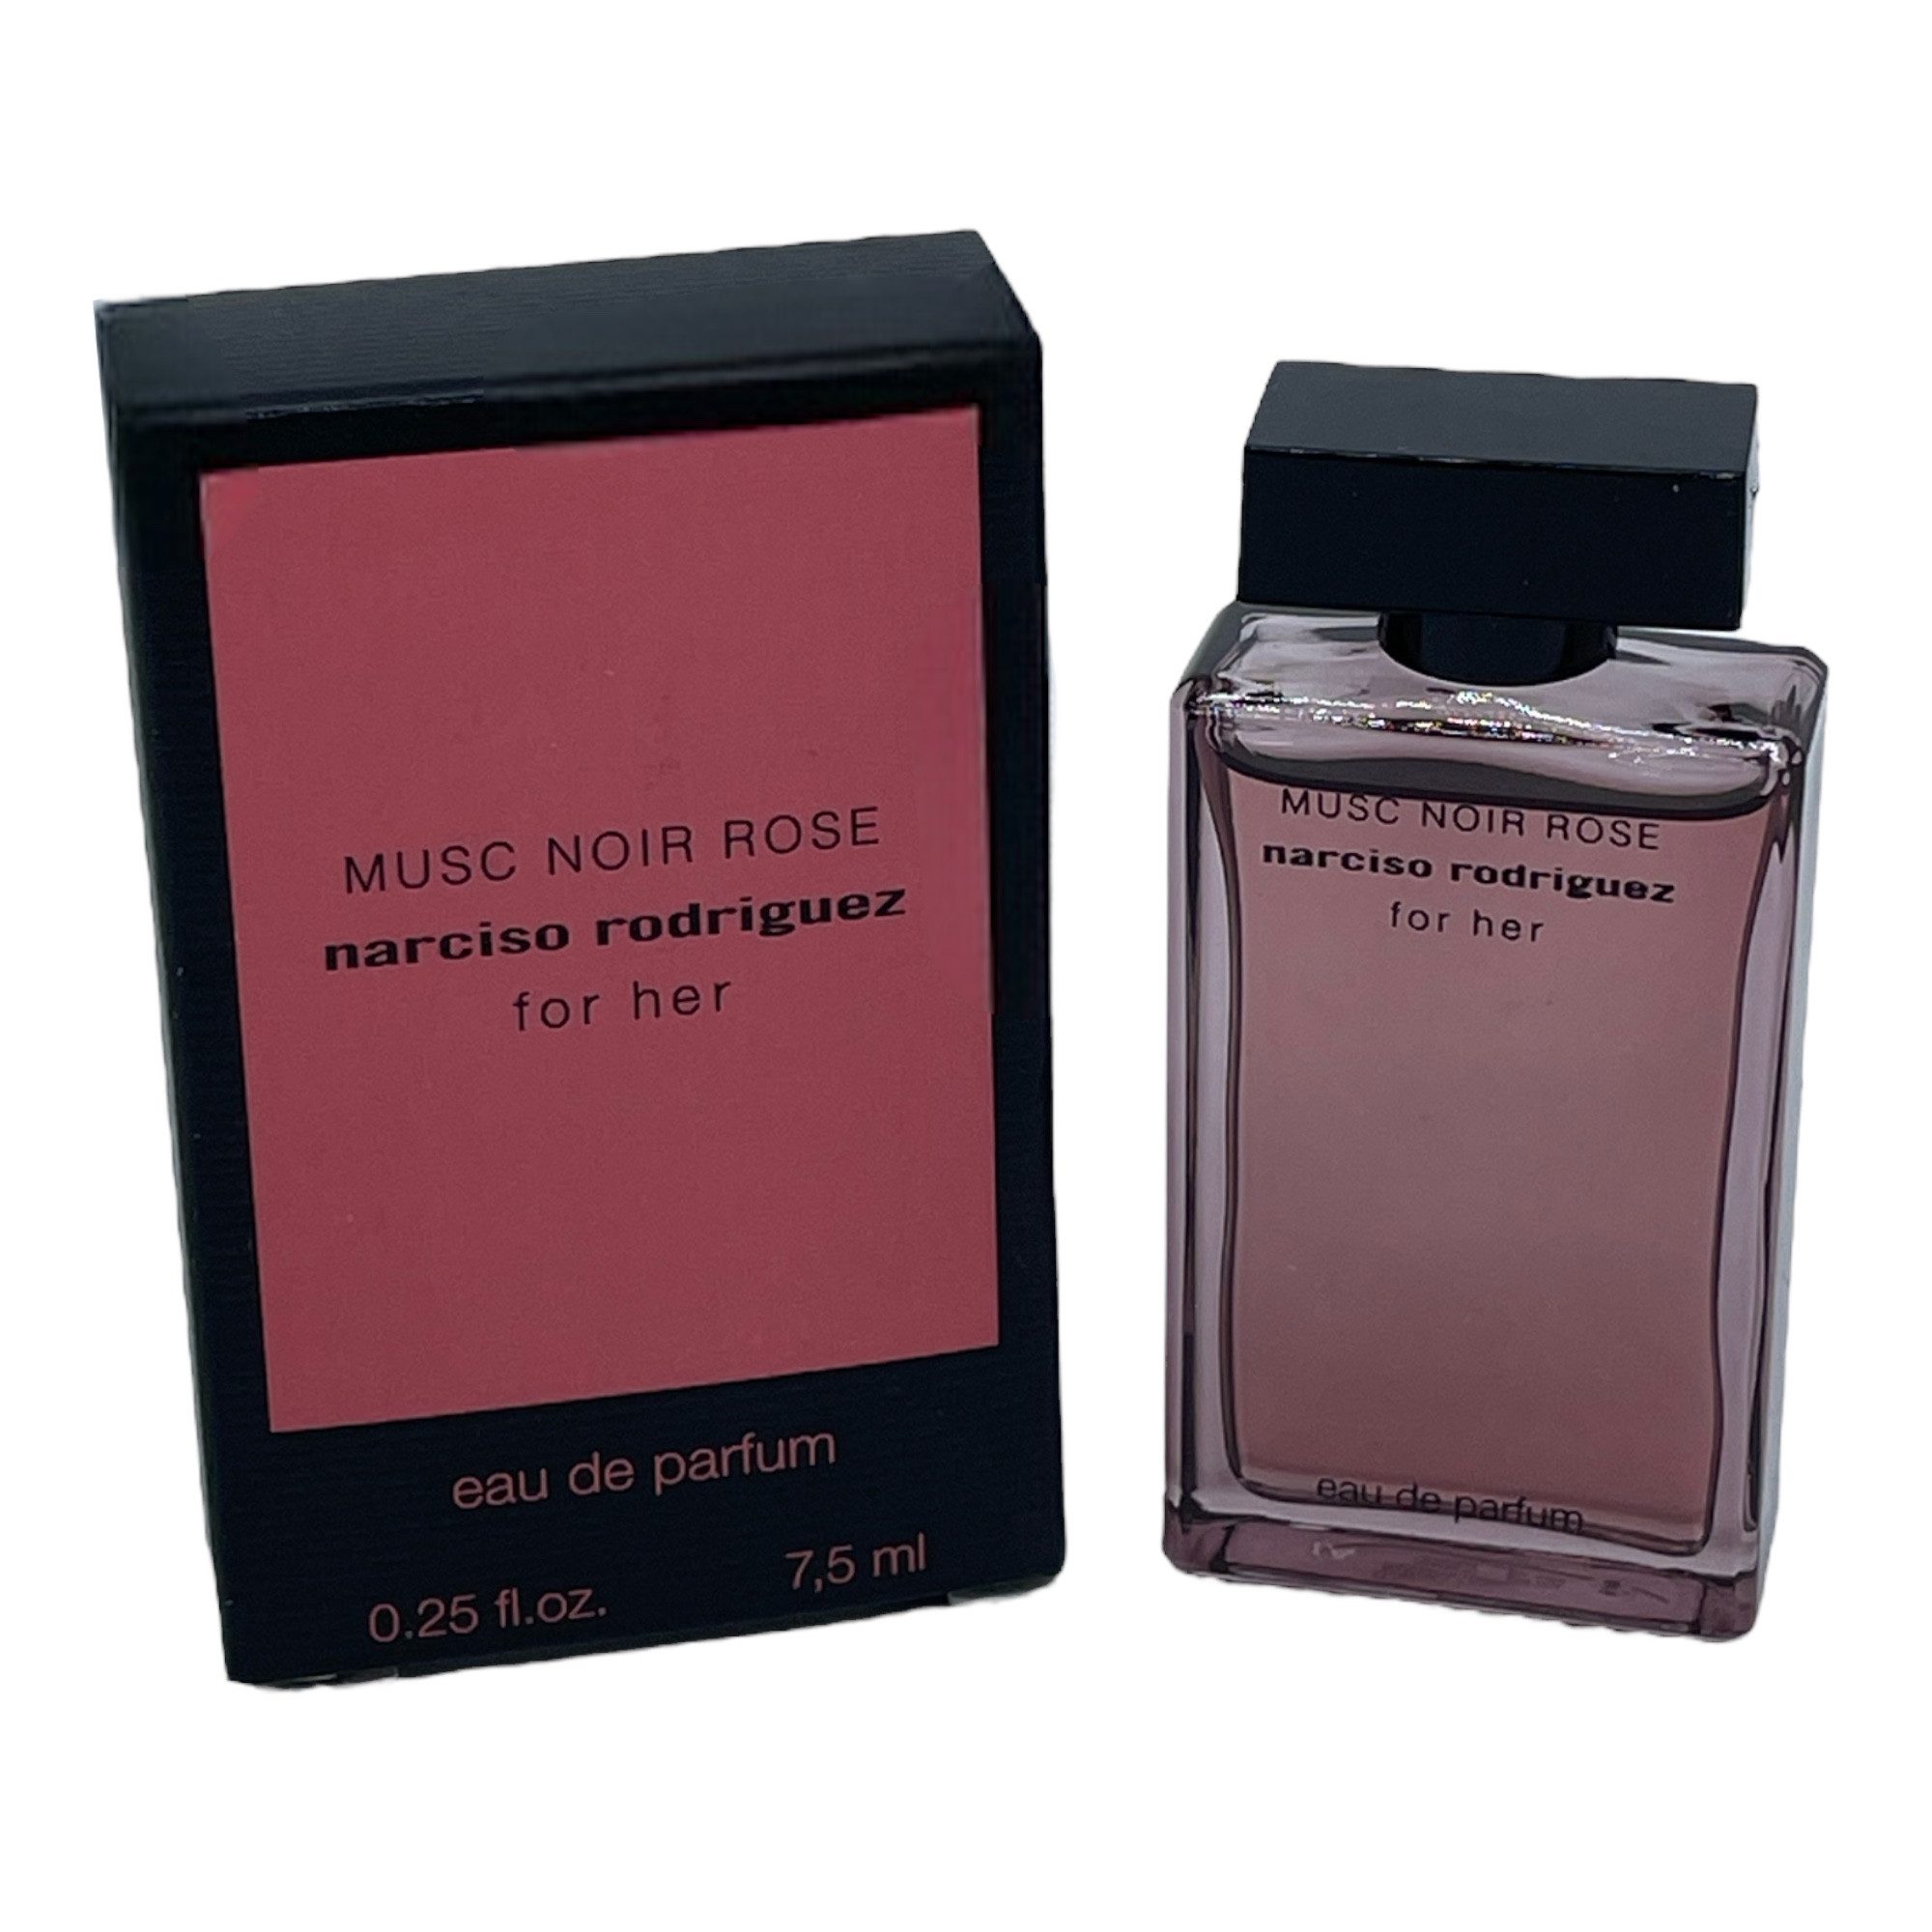 narciso rodriguez Eau de Parfum Musc Noir rose 7,5ml Miniatur Mini